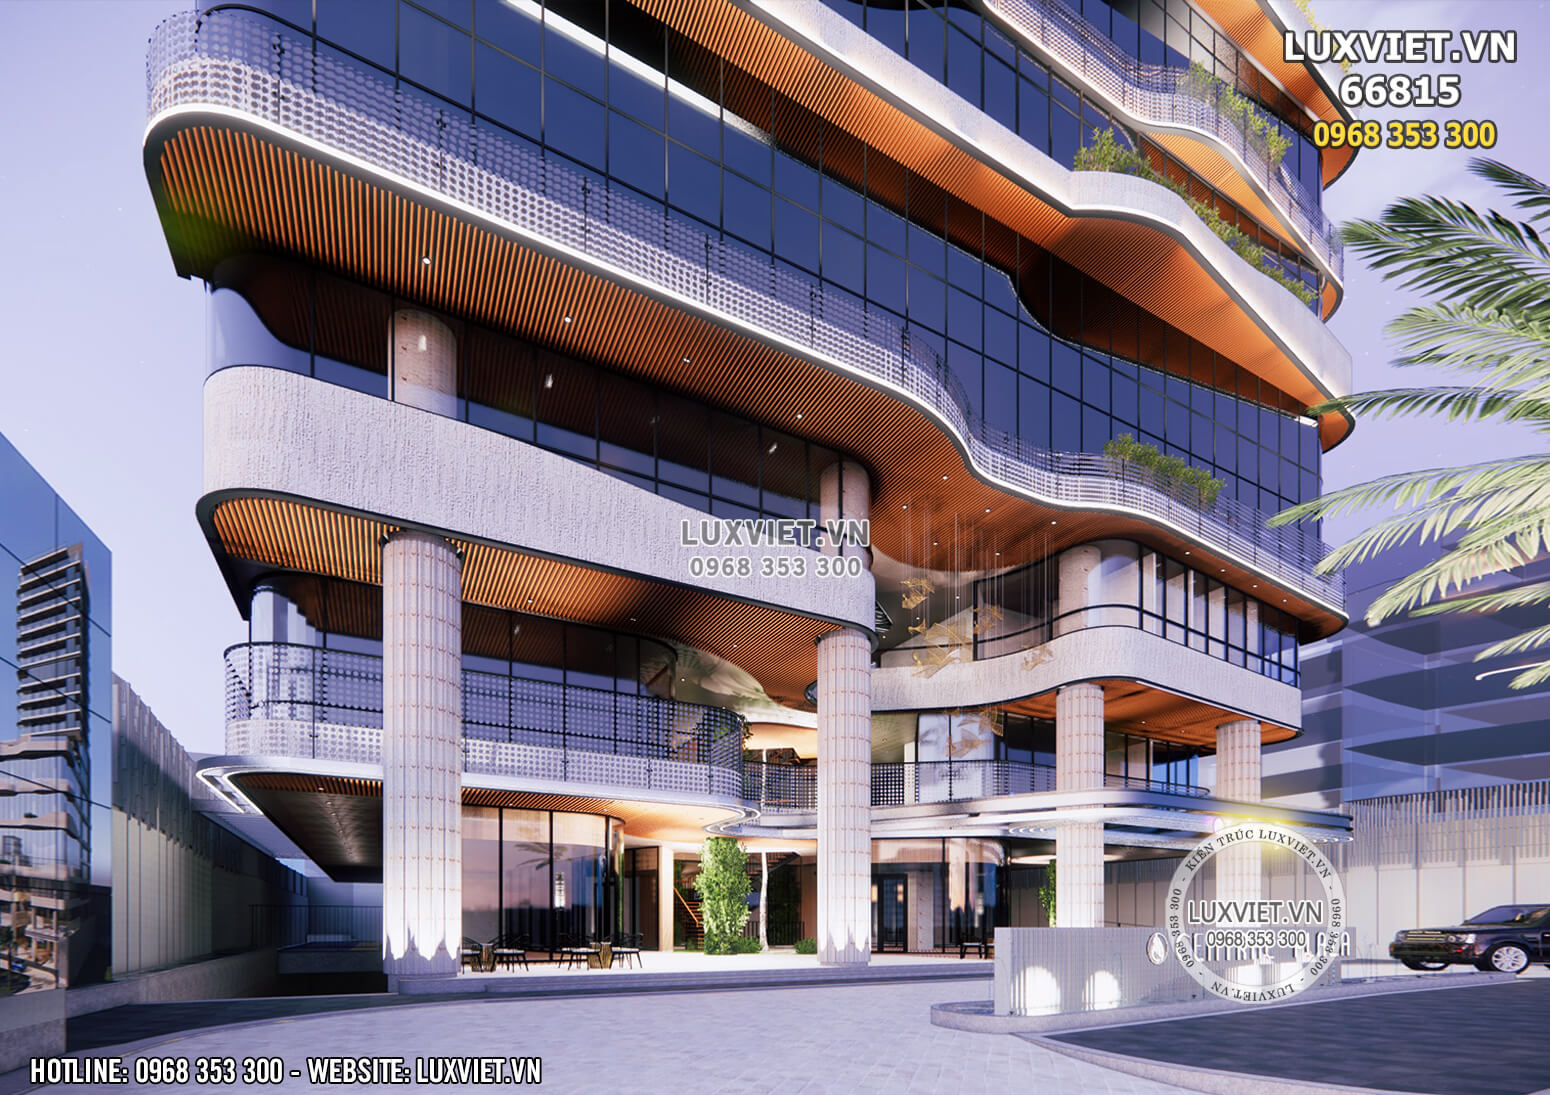 Hình ảnh: Sự sang trọng, đẳng cấp của mẫu thiết kế khách sạn 4 sao đẹp tại Tiền Giang